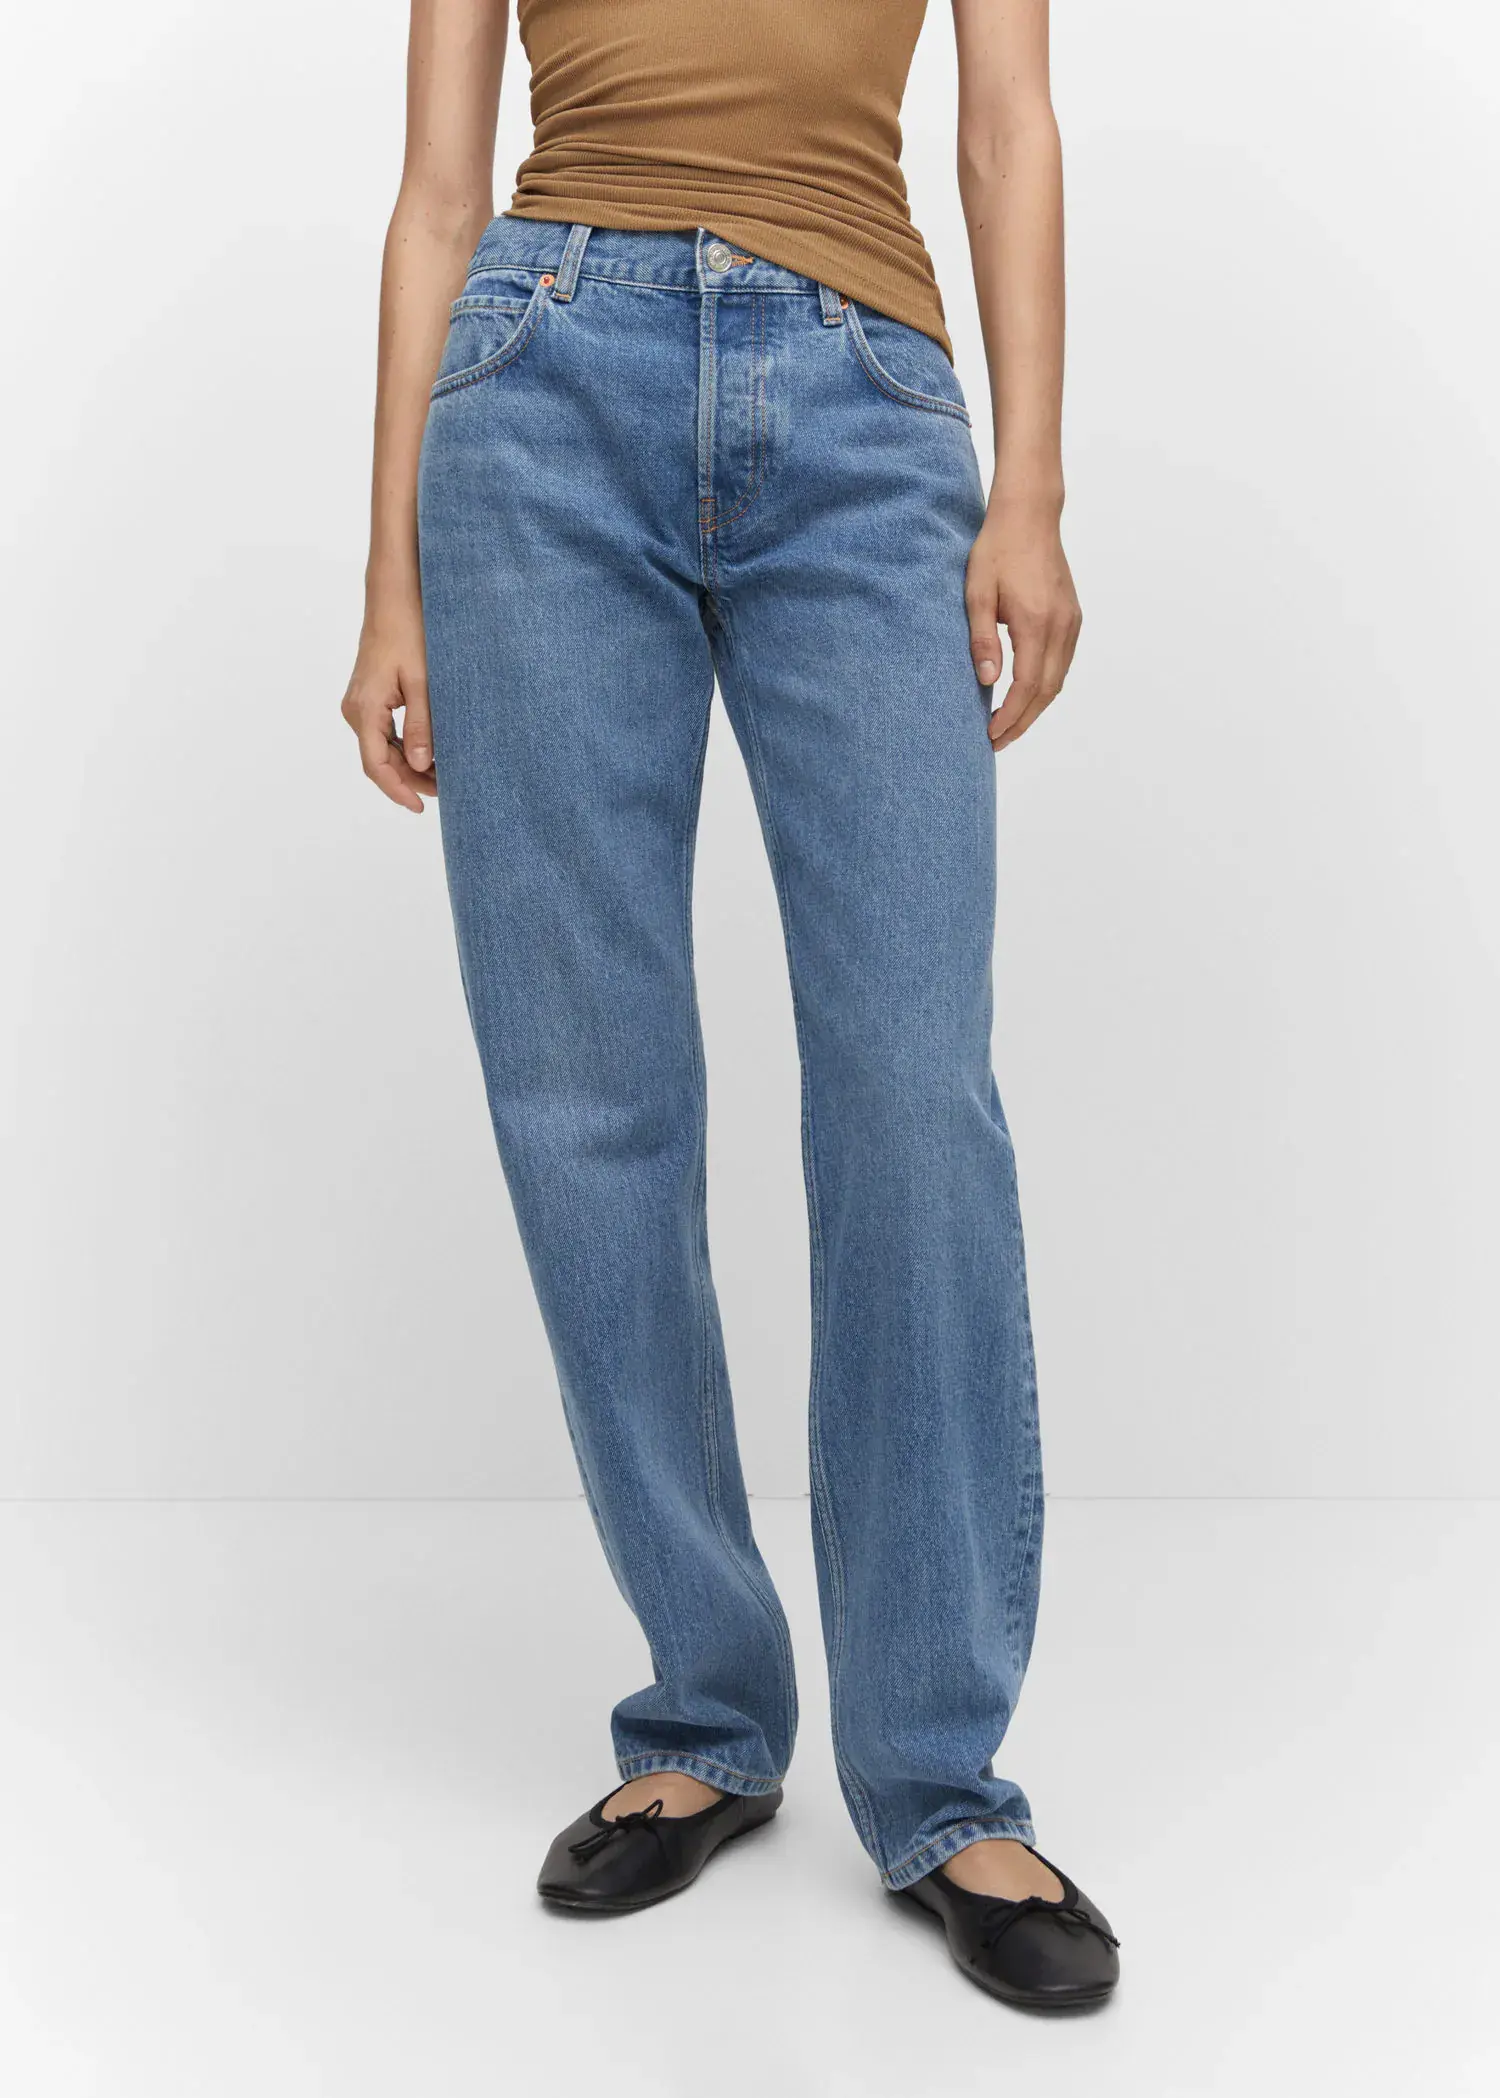 Mango Gerade Jeans mit mittlerem Bund. 2